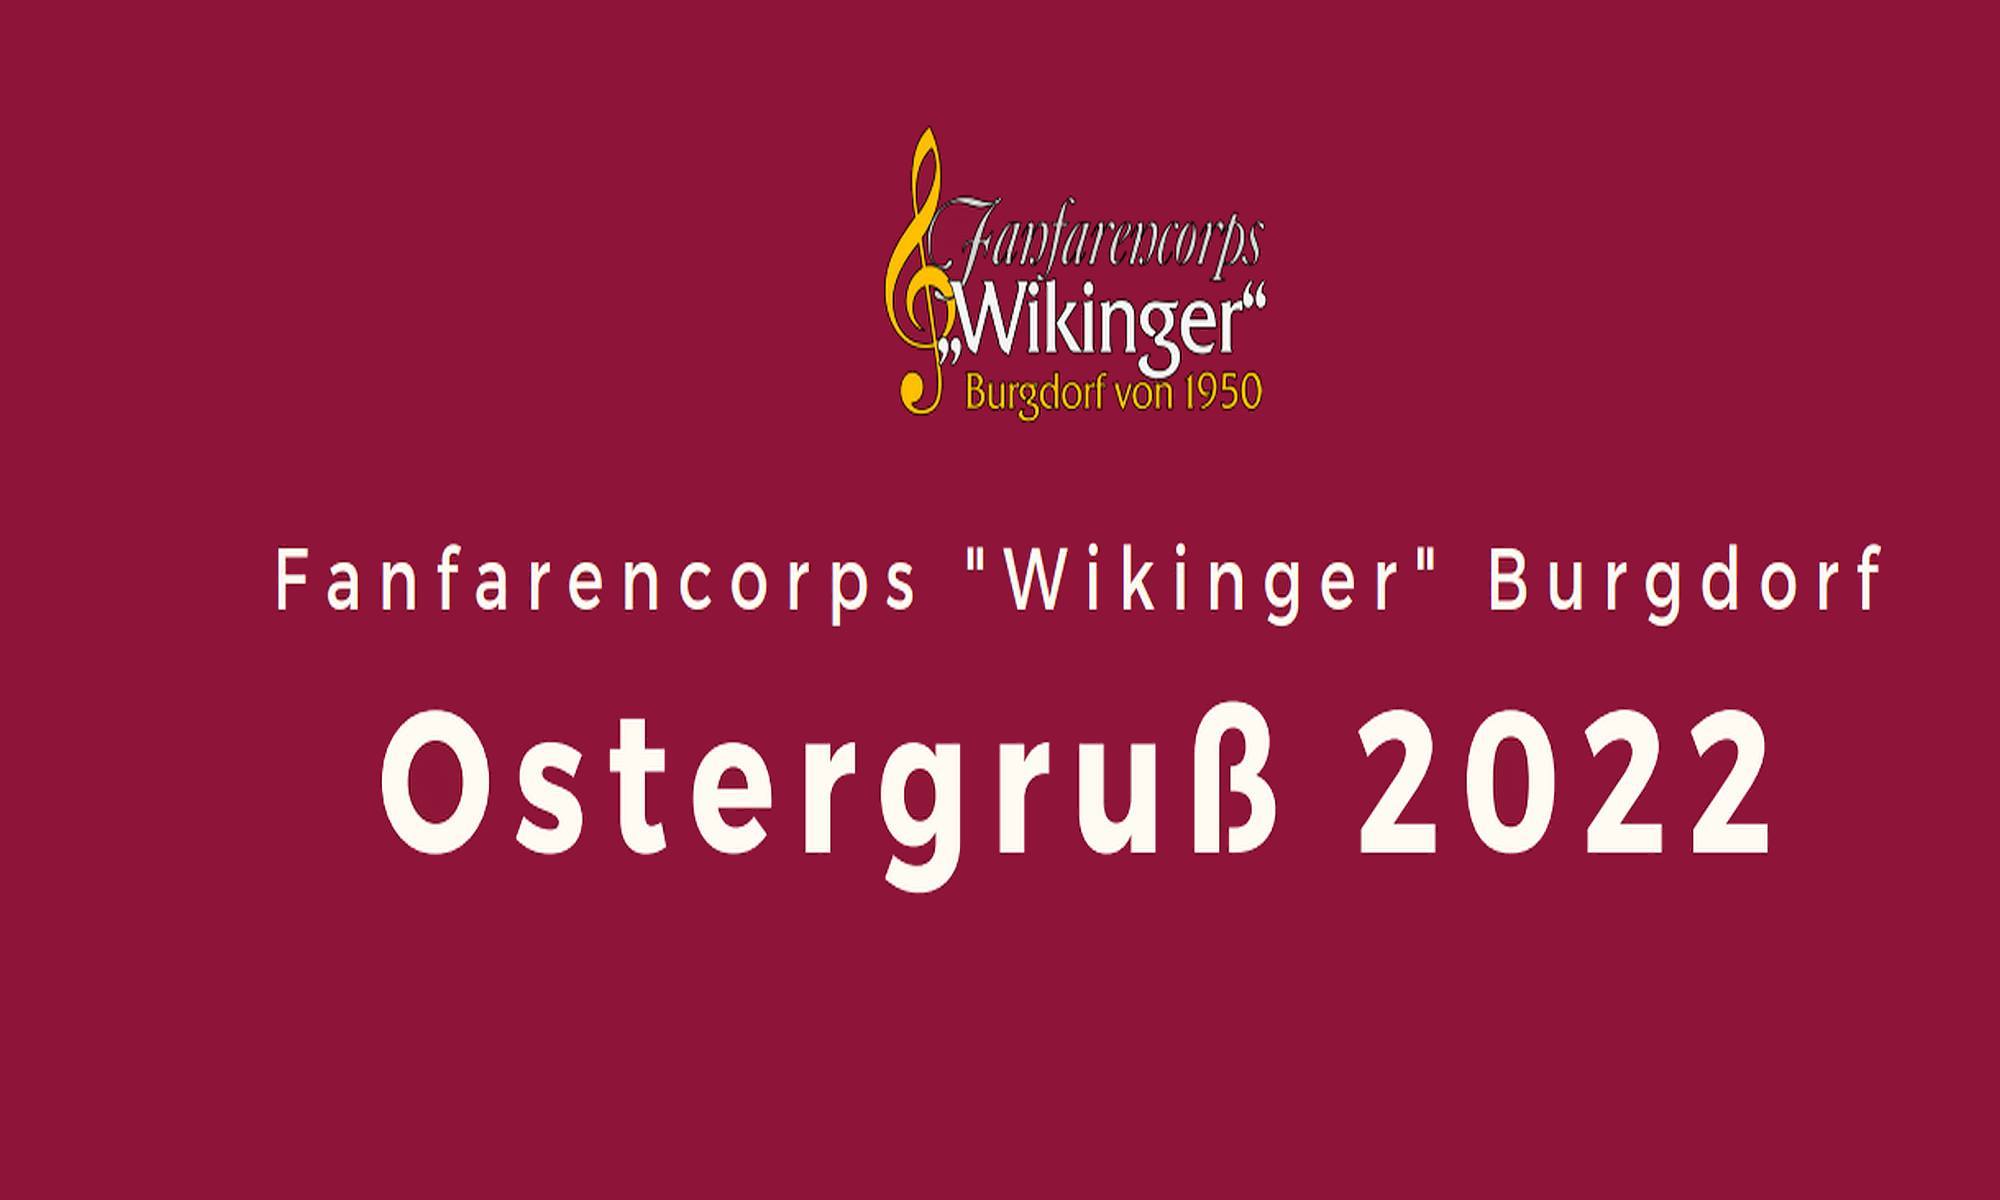 Fanfarencorps „Wikinger“ Burgdorf von 1950 – Ostergruß 2022